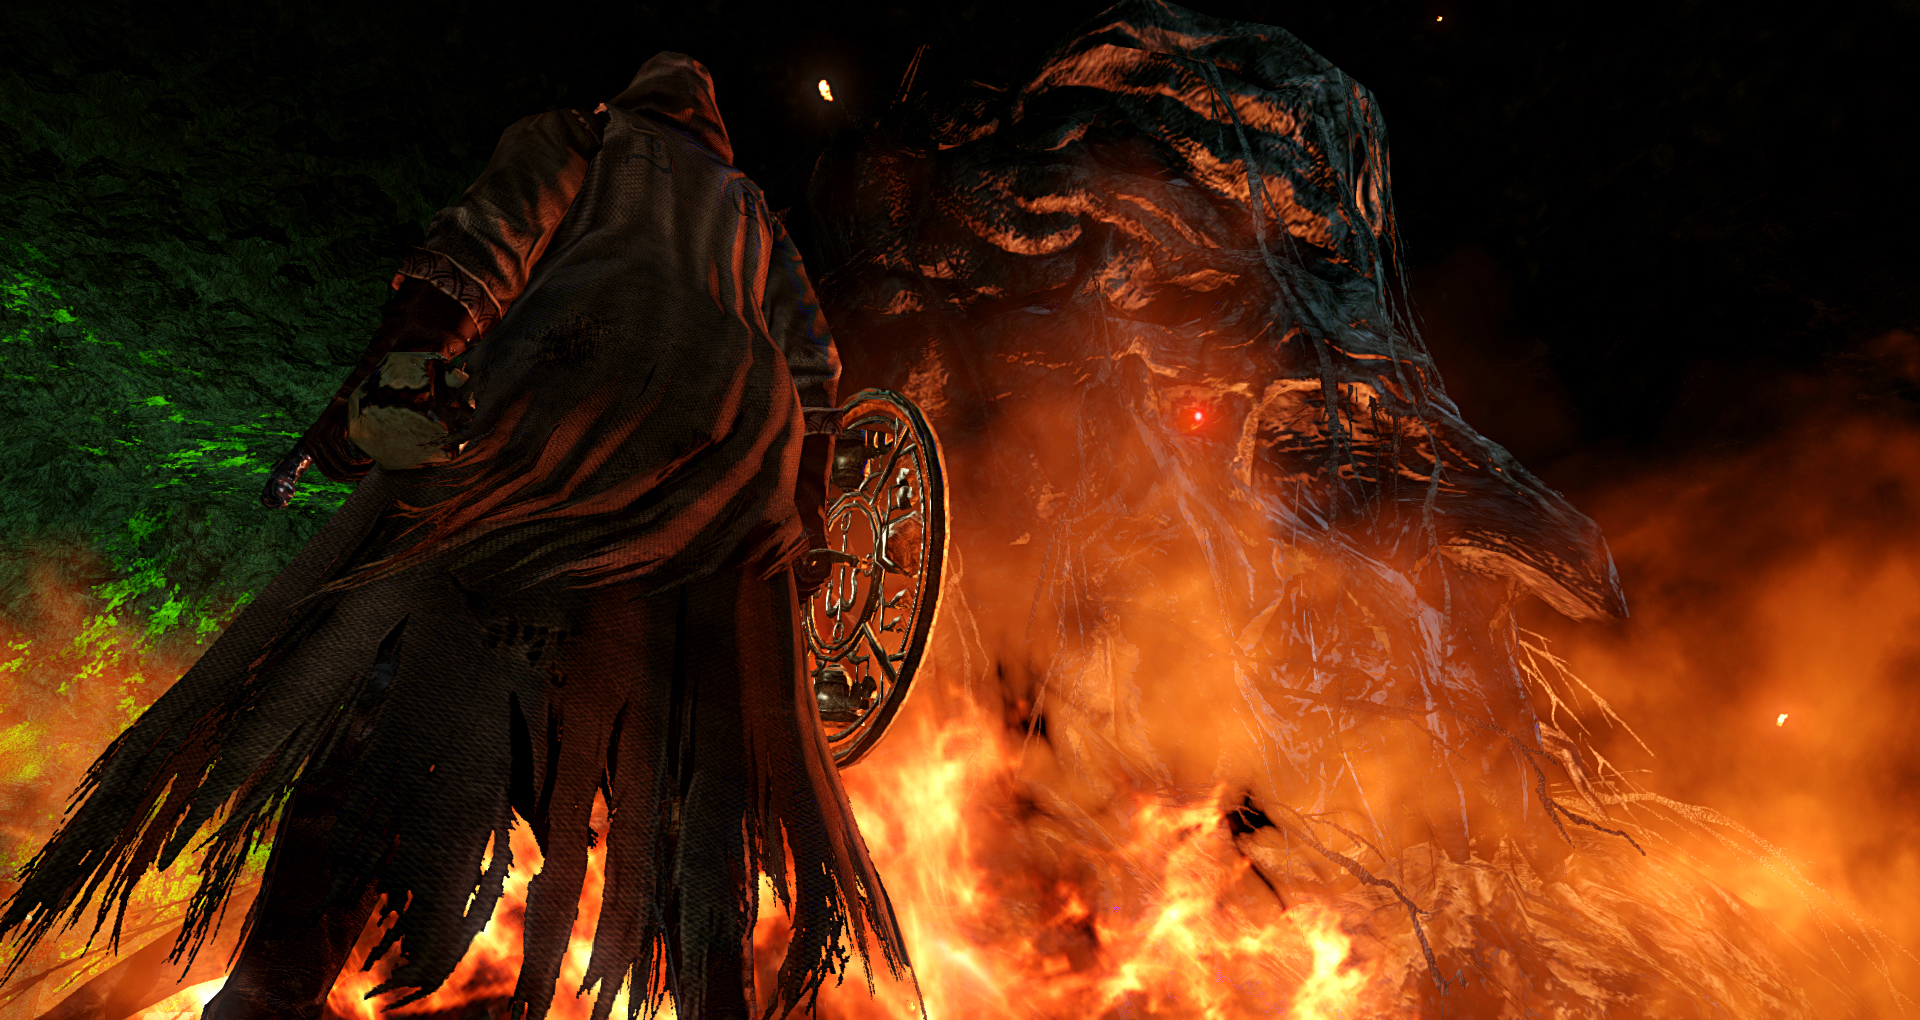 Dark Souls 2 Scholar of the Second Sin Visual Overhaul Mod is now